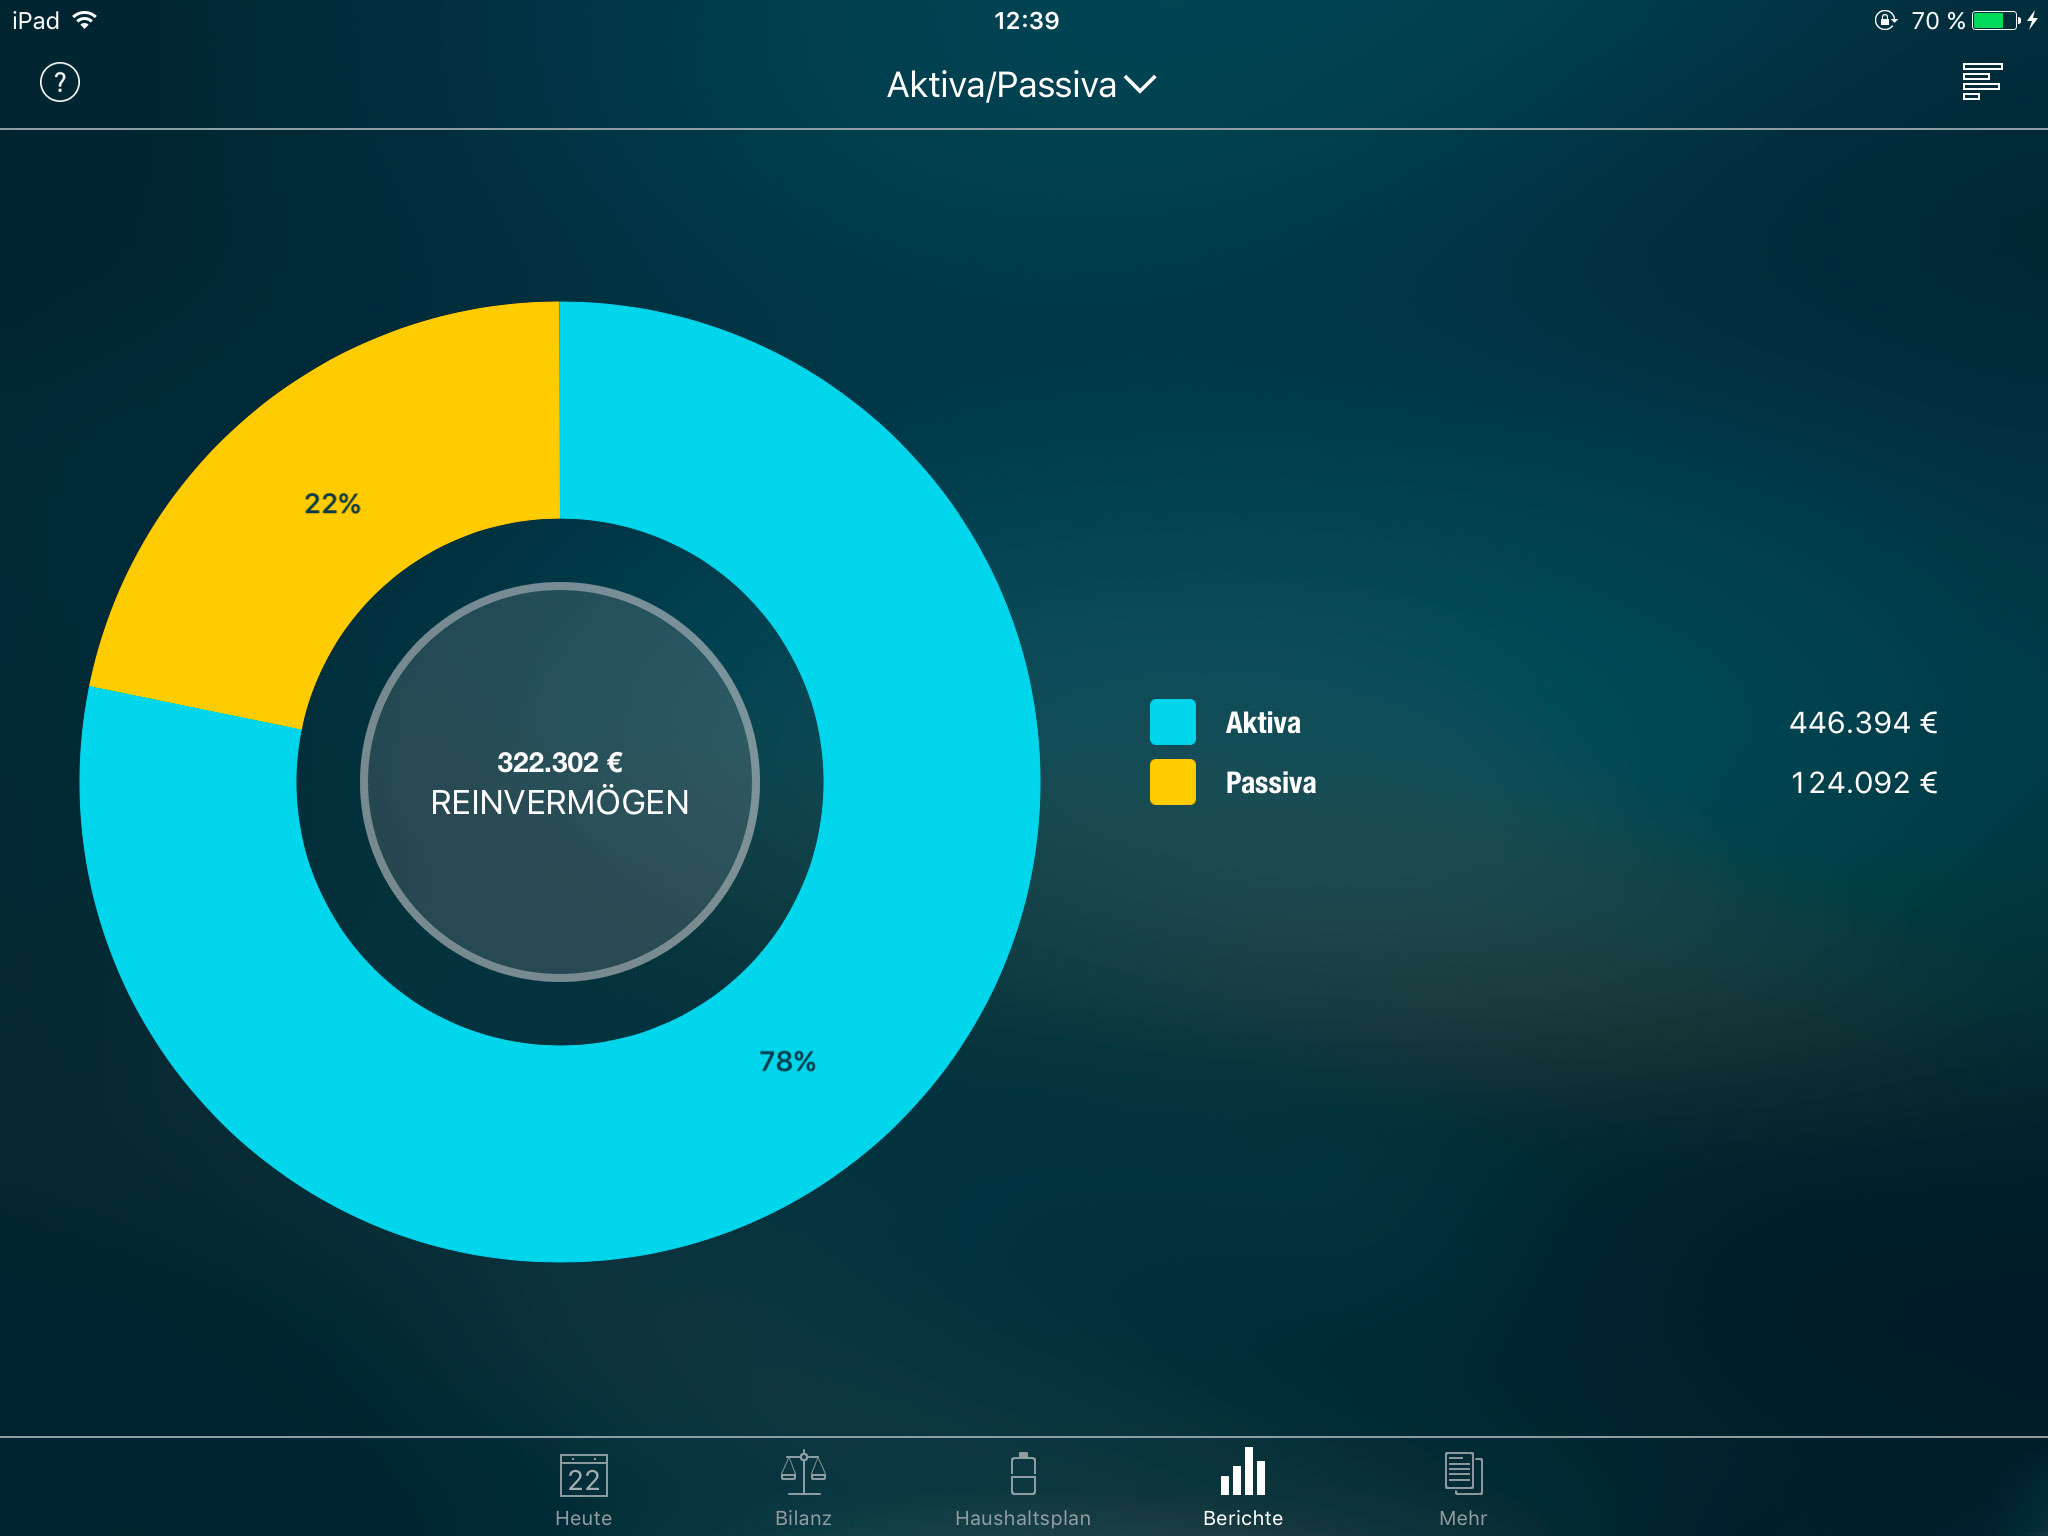 Money Pro - Aktiva/Passiva - iPad